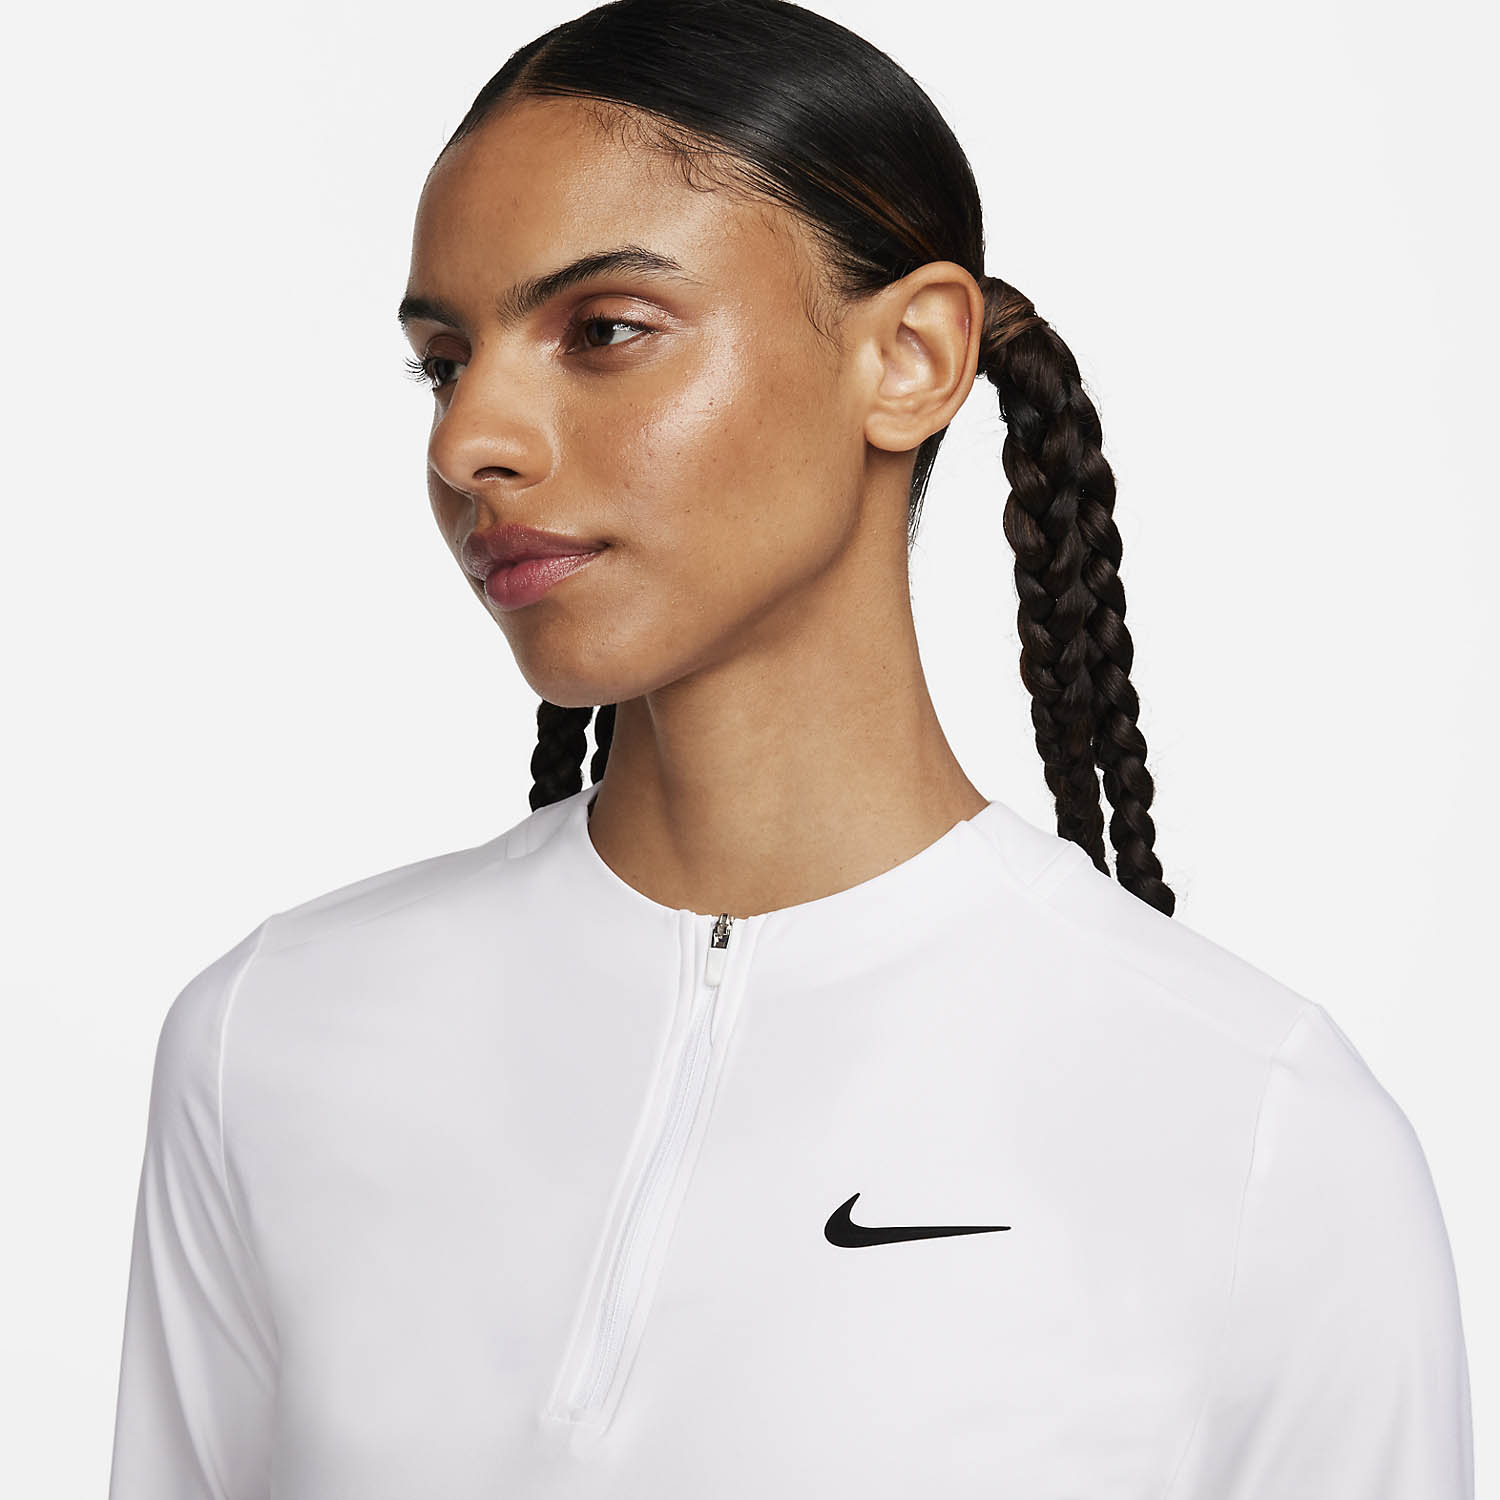 Nike Advantage Women's Tennis Shirt - White/Black